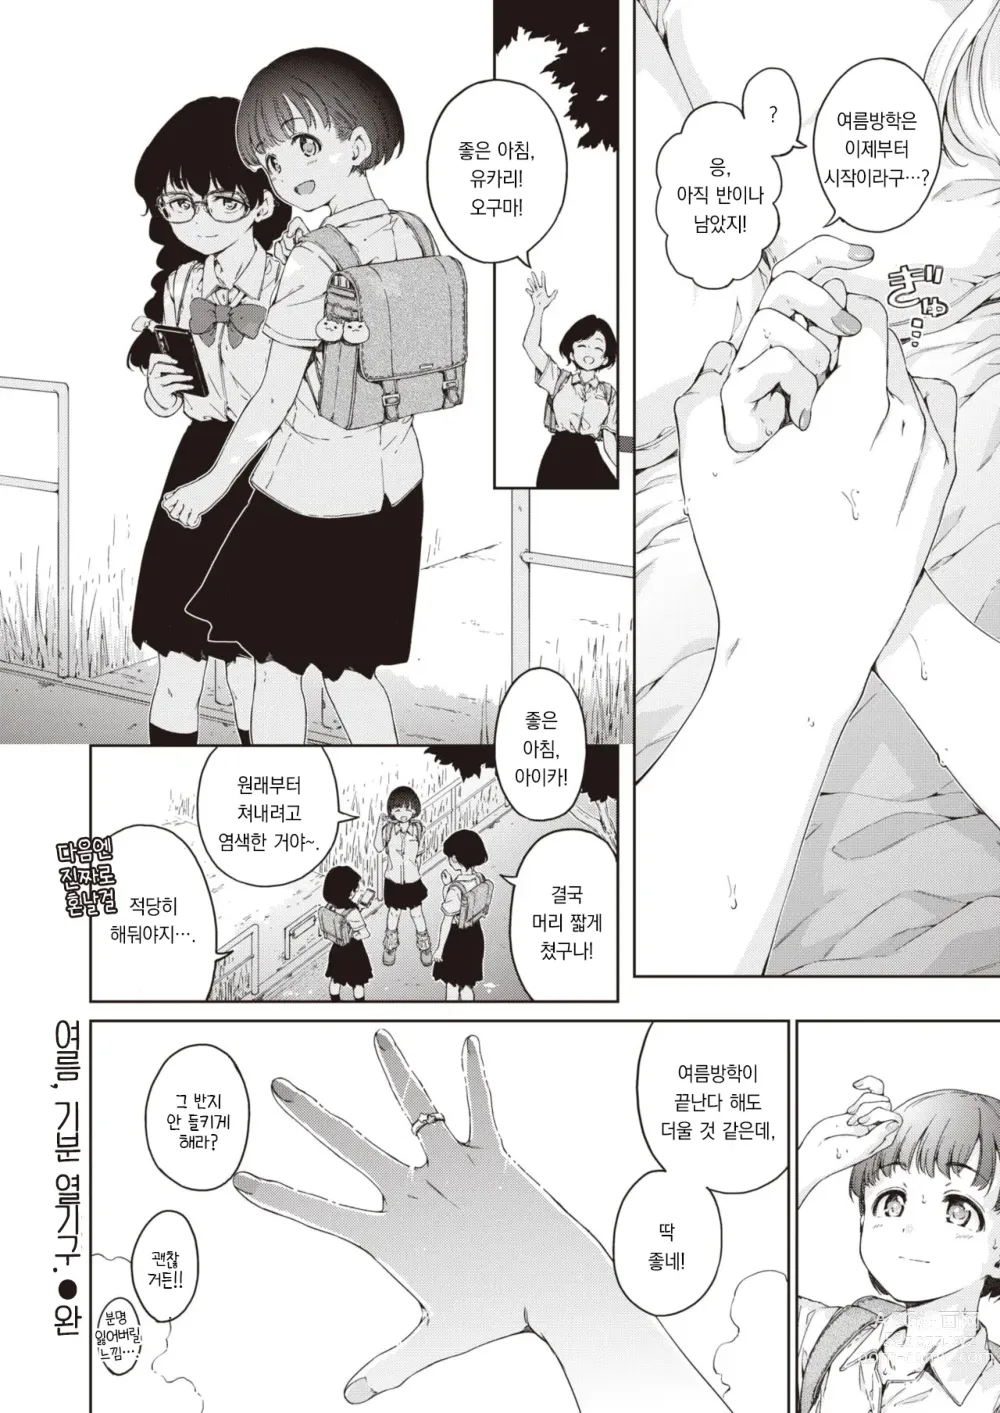 Page 21 of manga 여름, 기분 열기구.